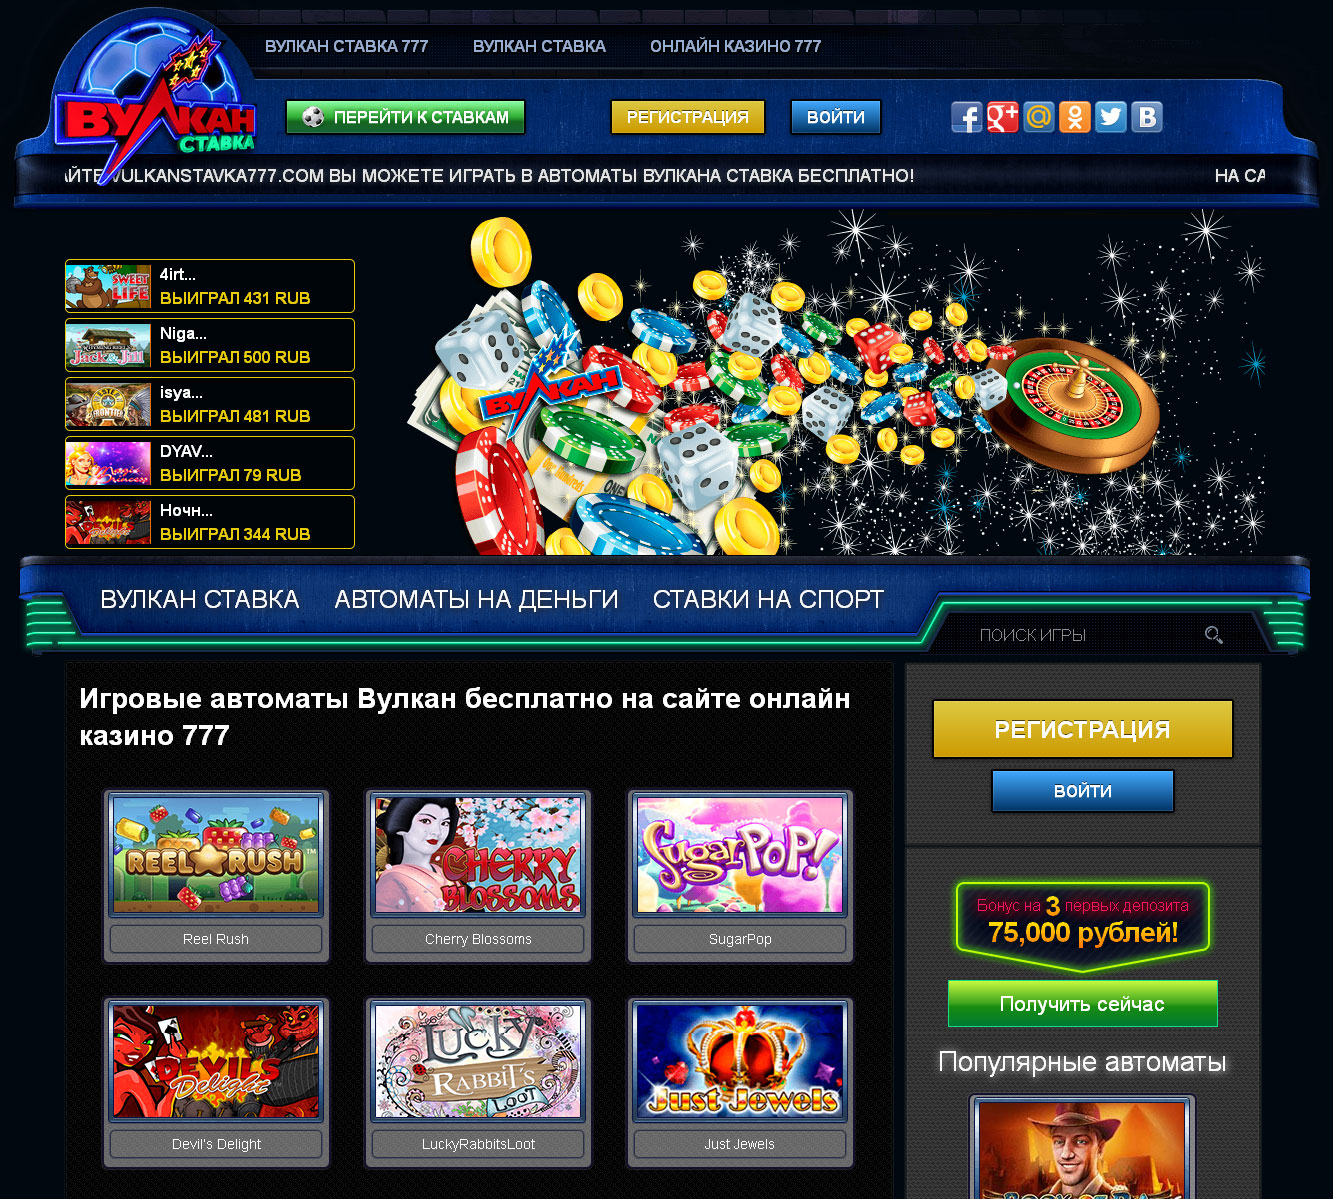 Игровые автоматы Вулкан бесплатно на сайте онлайн казино 777